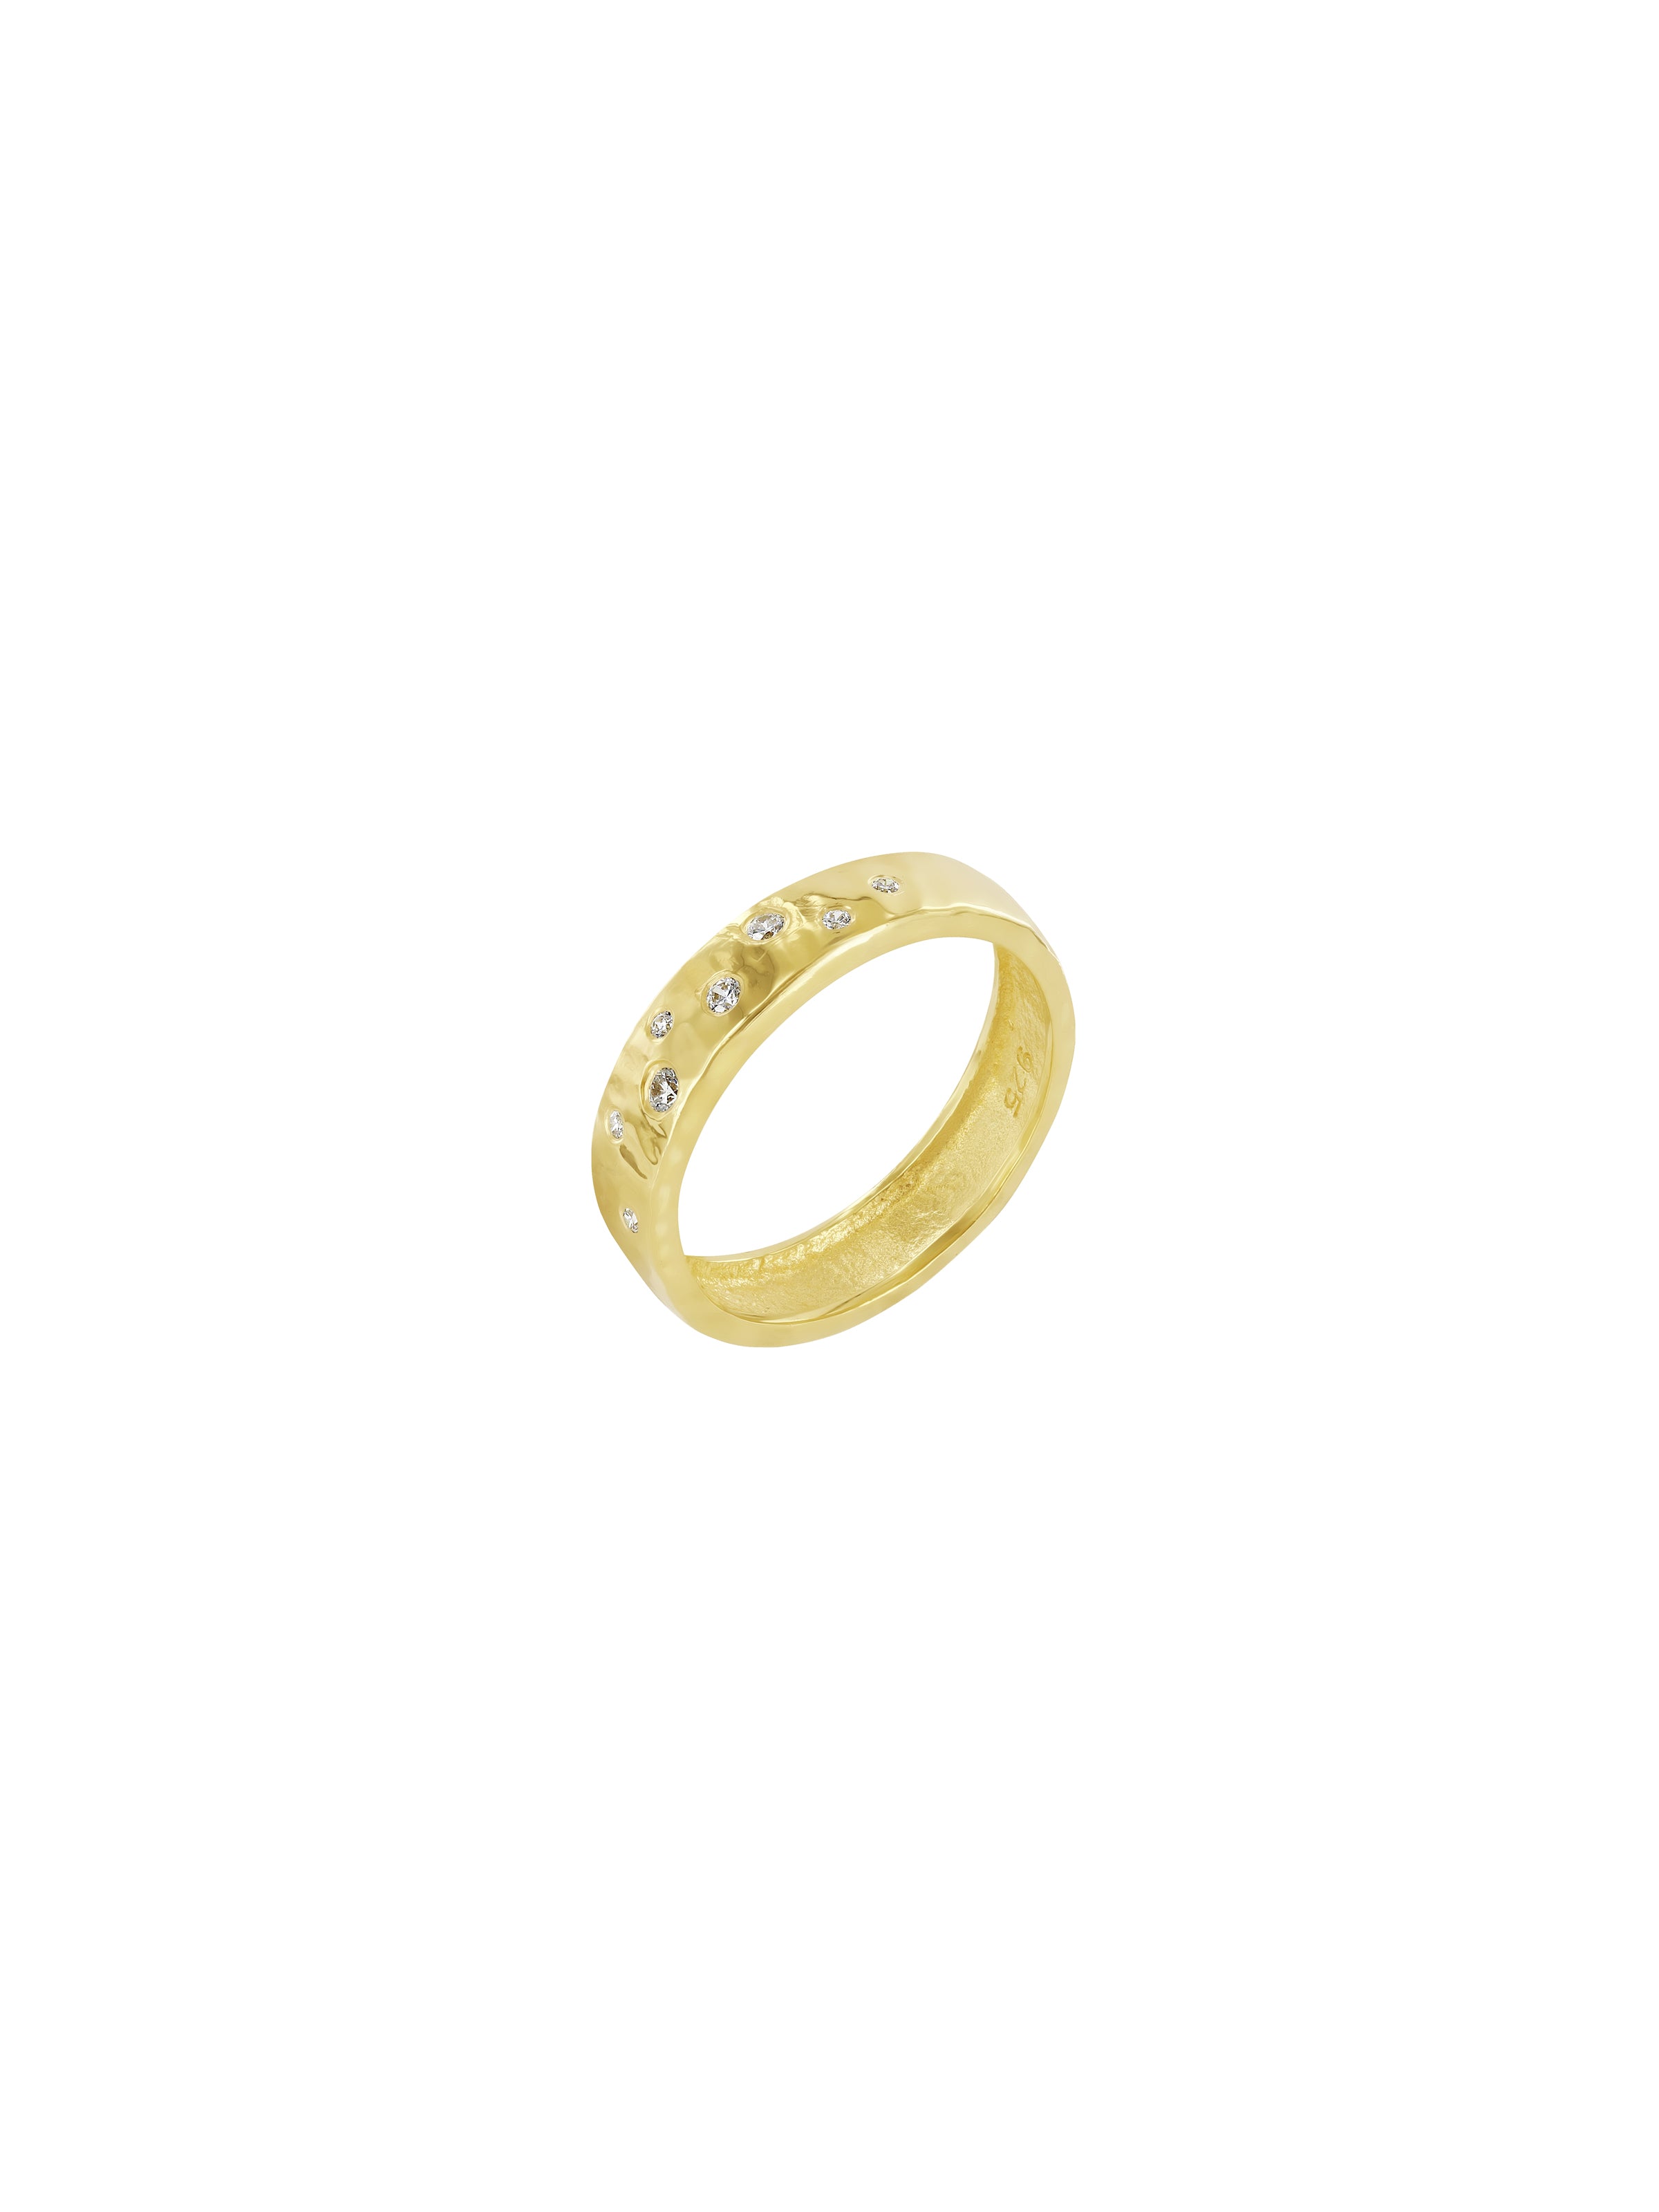 Zephyr Oracle Ring Gold Vermeil